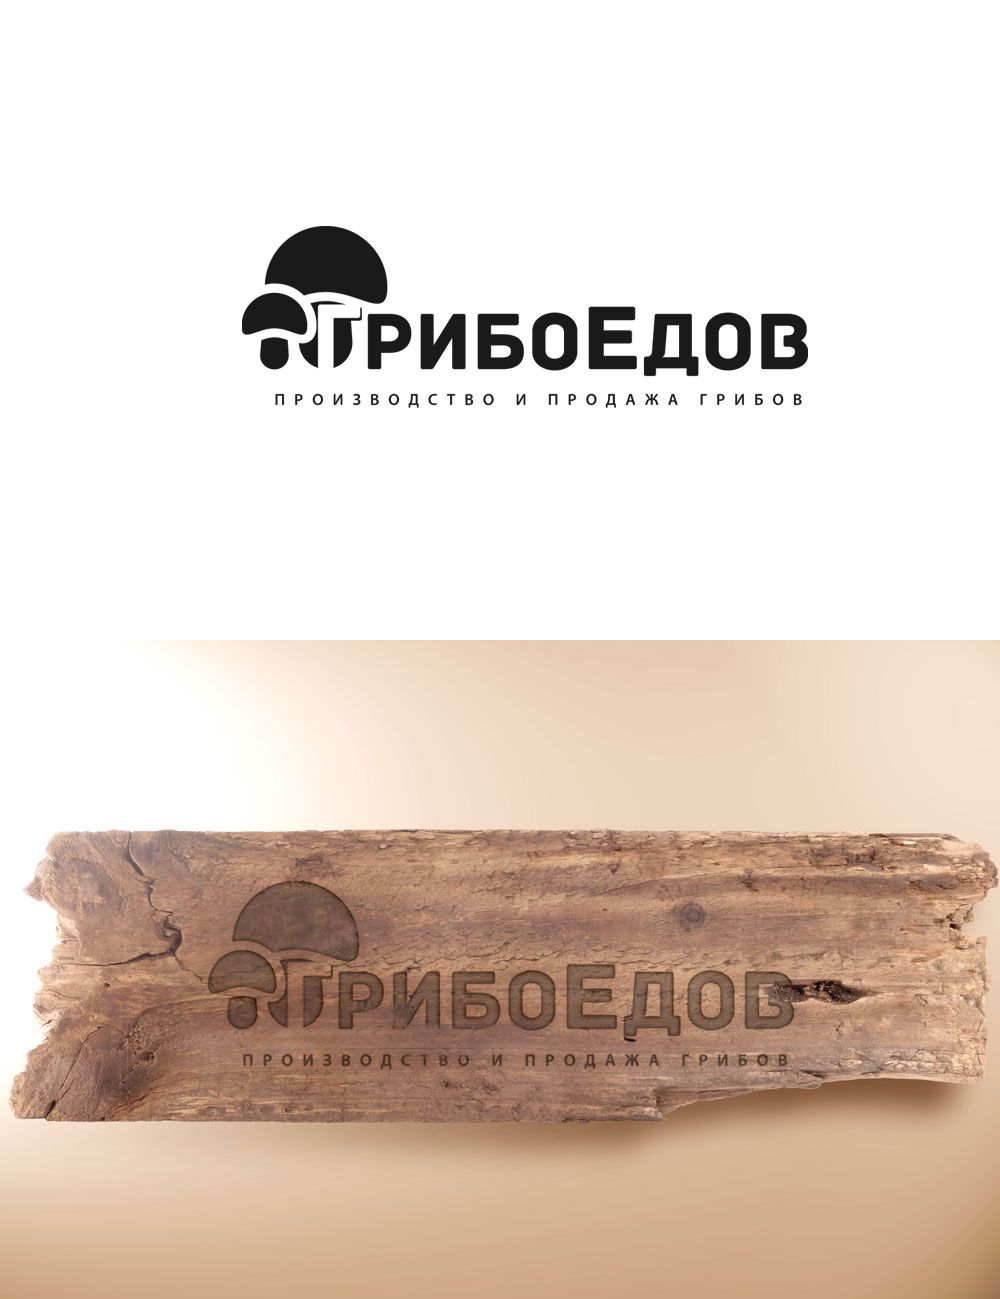 Логотип для ГрибоЕдов  - дизайнер GreenRed